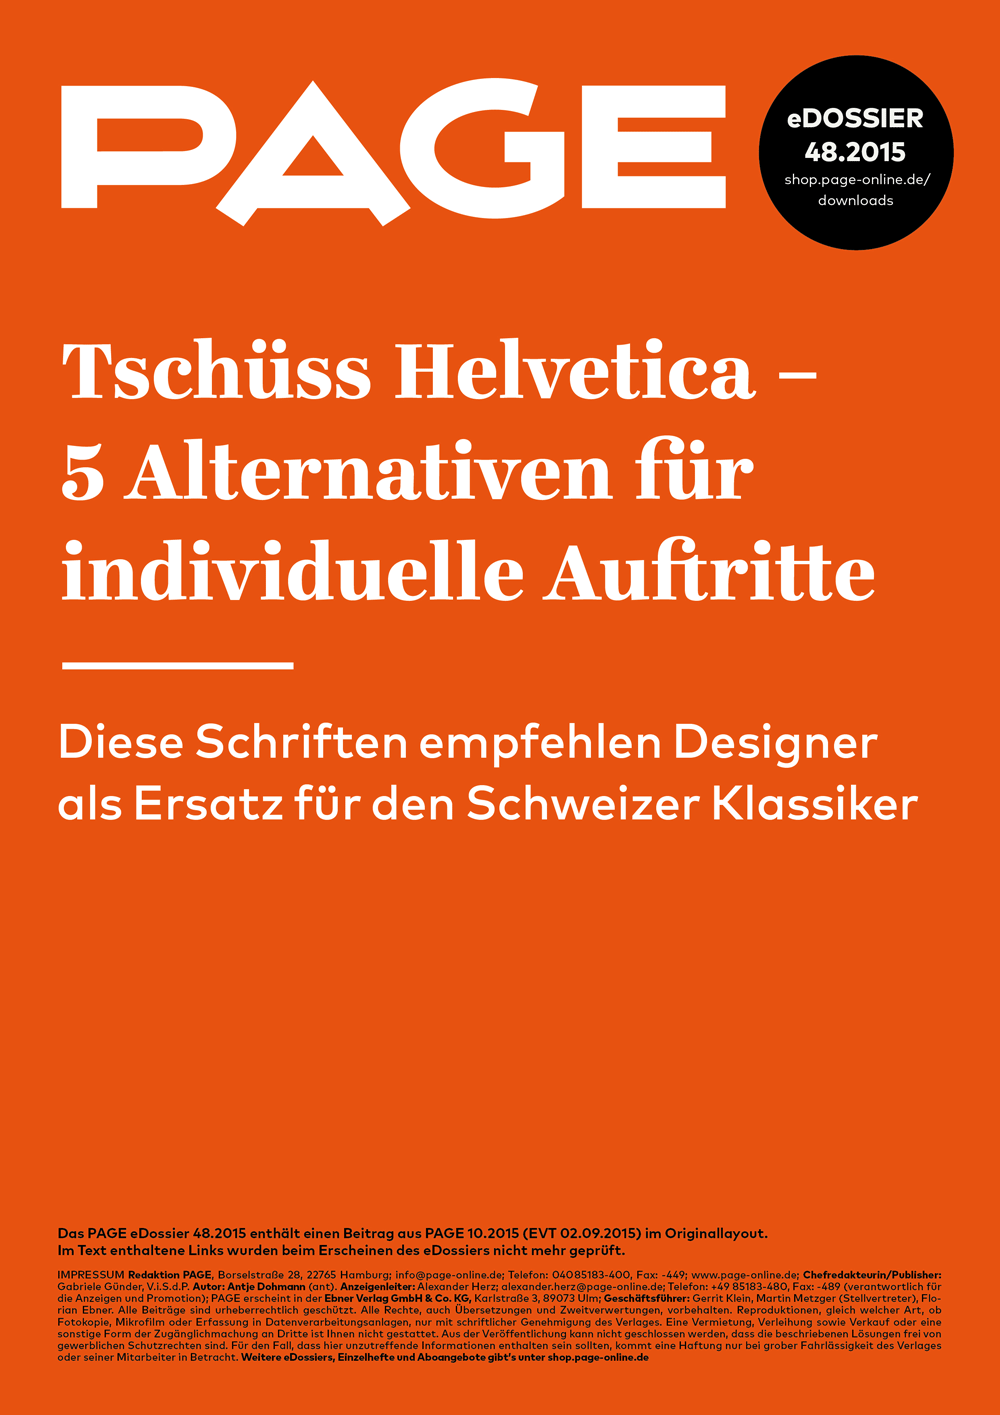 Helvetica-Alternativen, Serifenlose Schrift, Neue Helvetica, Corporate Font